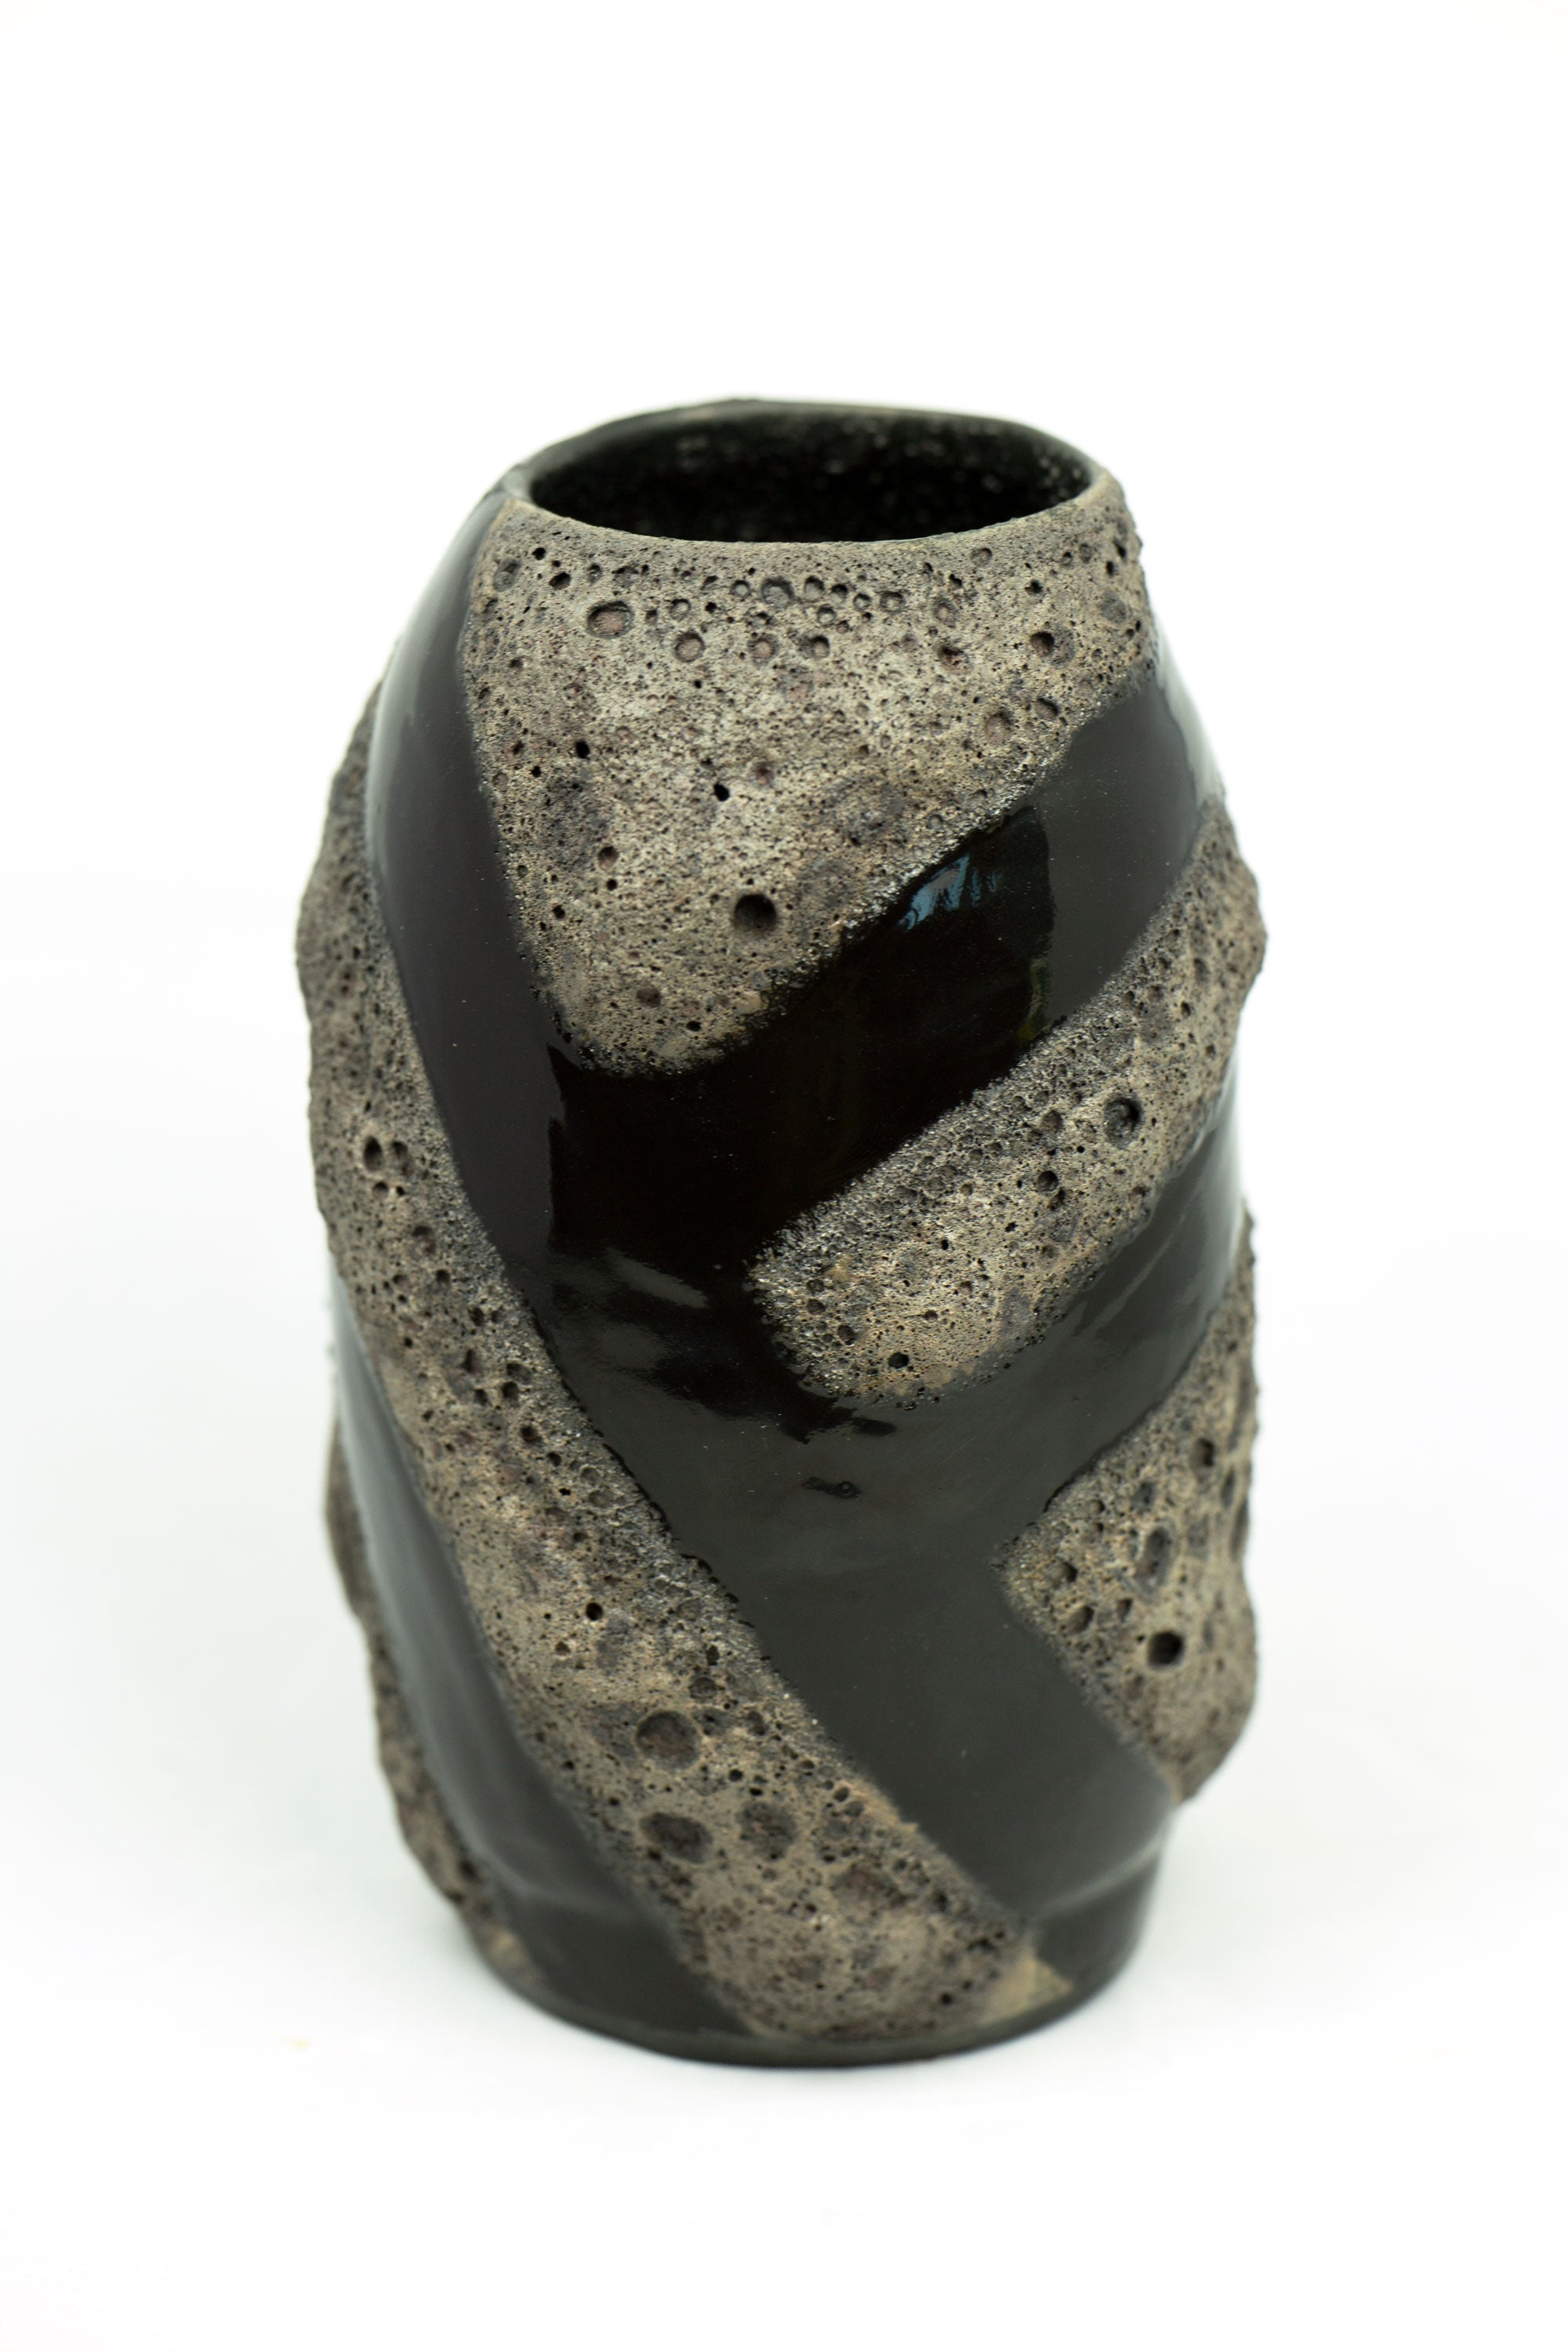 Black Lava Laze on Porcelain Vessel (SOLD)